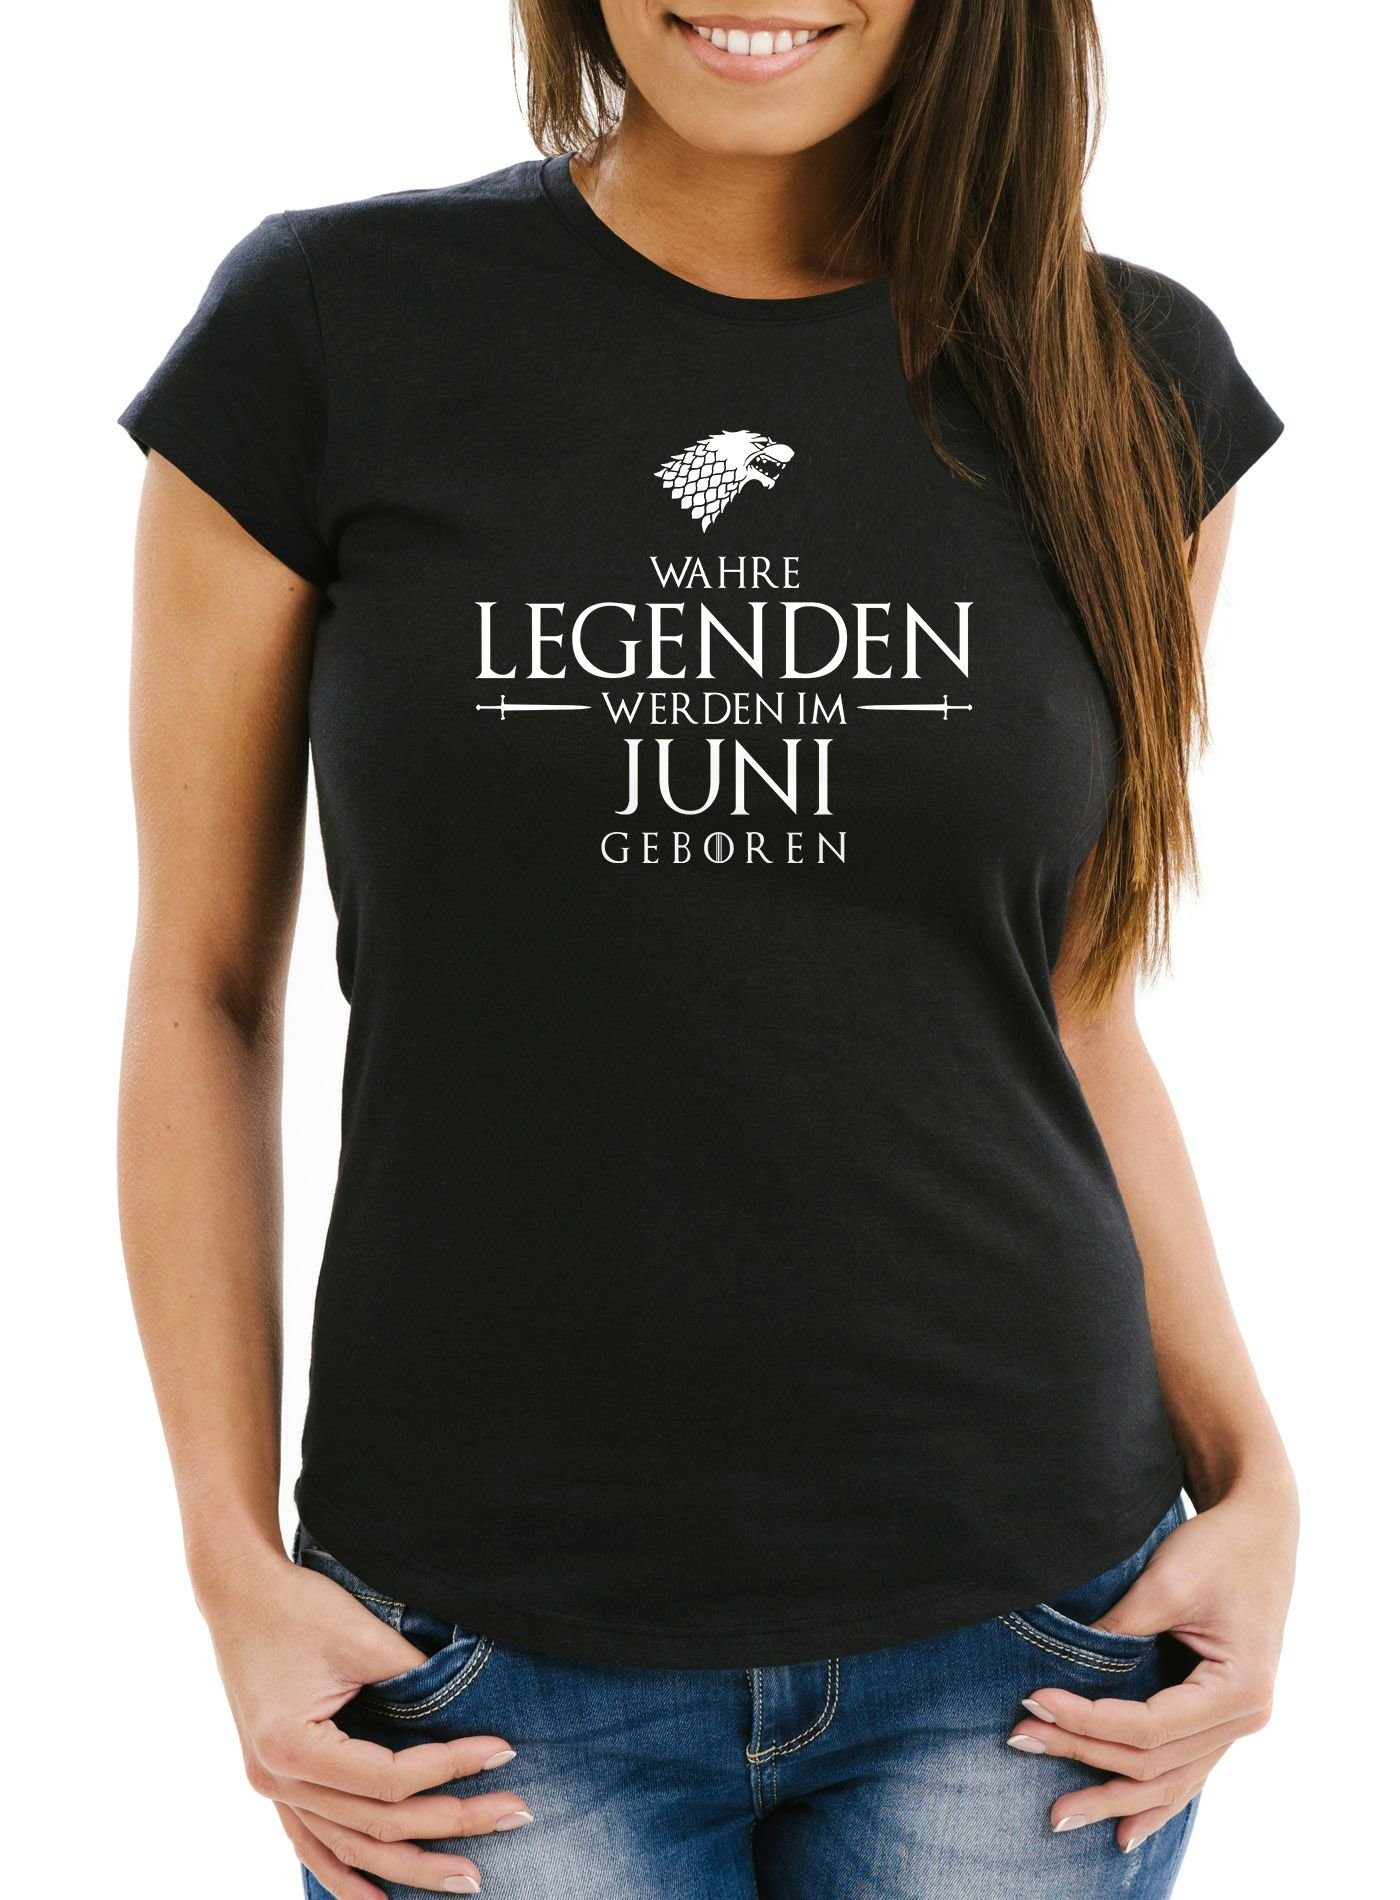 Damen Wahre im T-Shirt werden Print mit Moonworks® Object] geboren Legenden Print-Shirt schwarz Slim Juni [object Fit MoonWorks